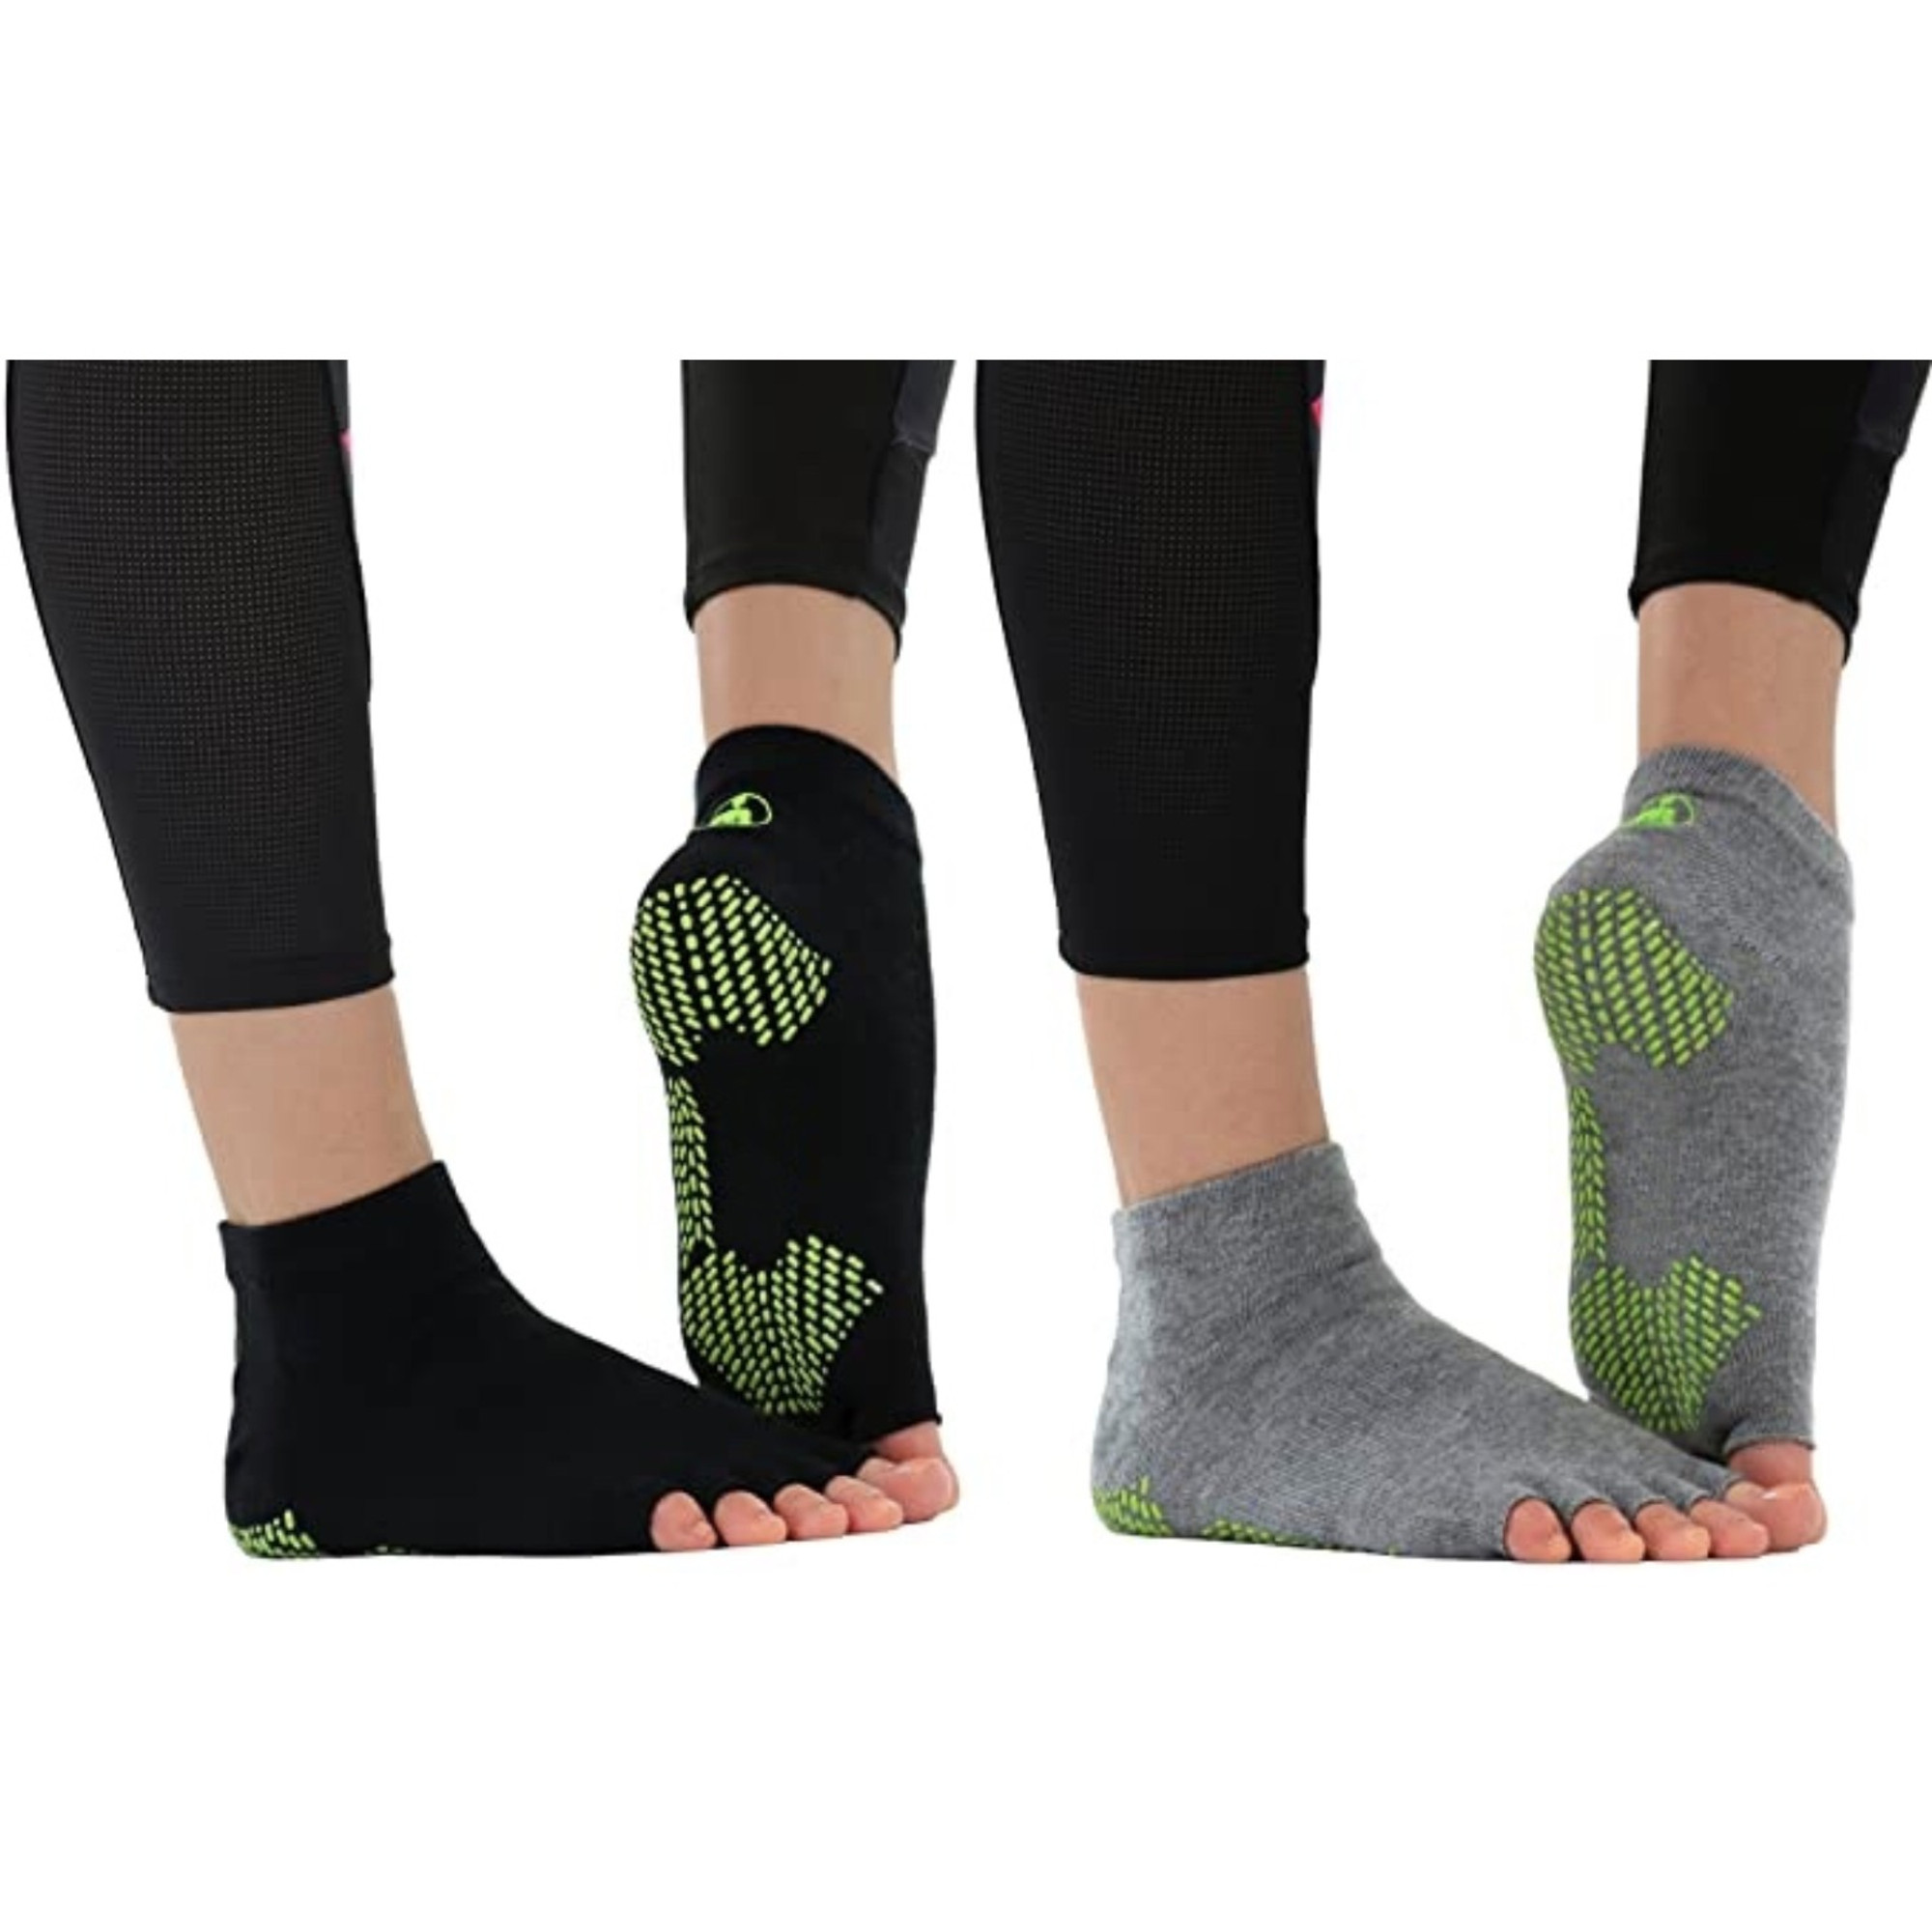 Yoga Pilates Toeless Socks with Grips ,Non Slip Half Toe for Barre